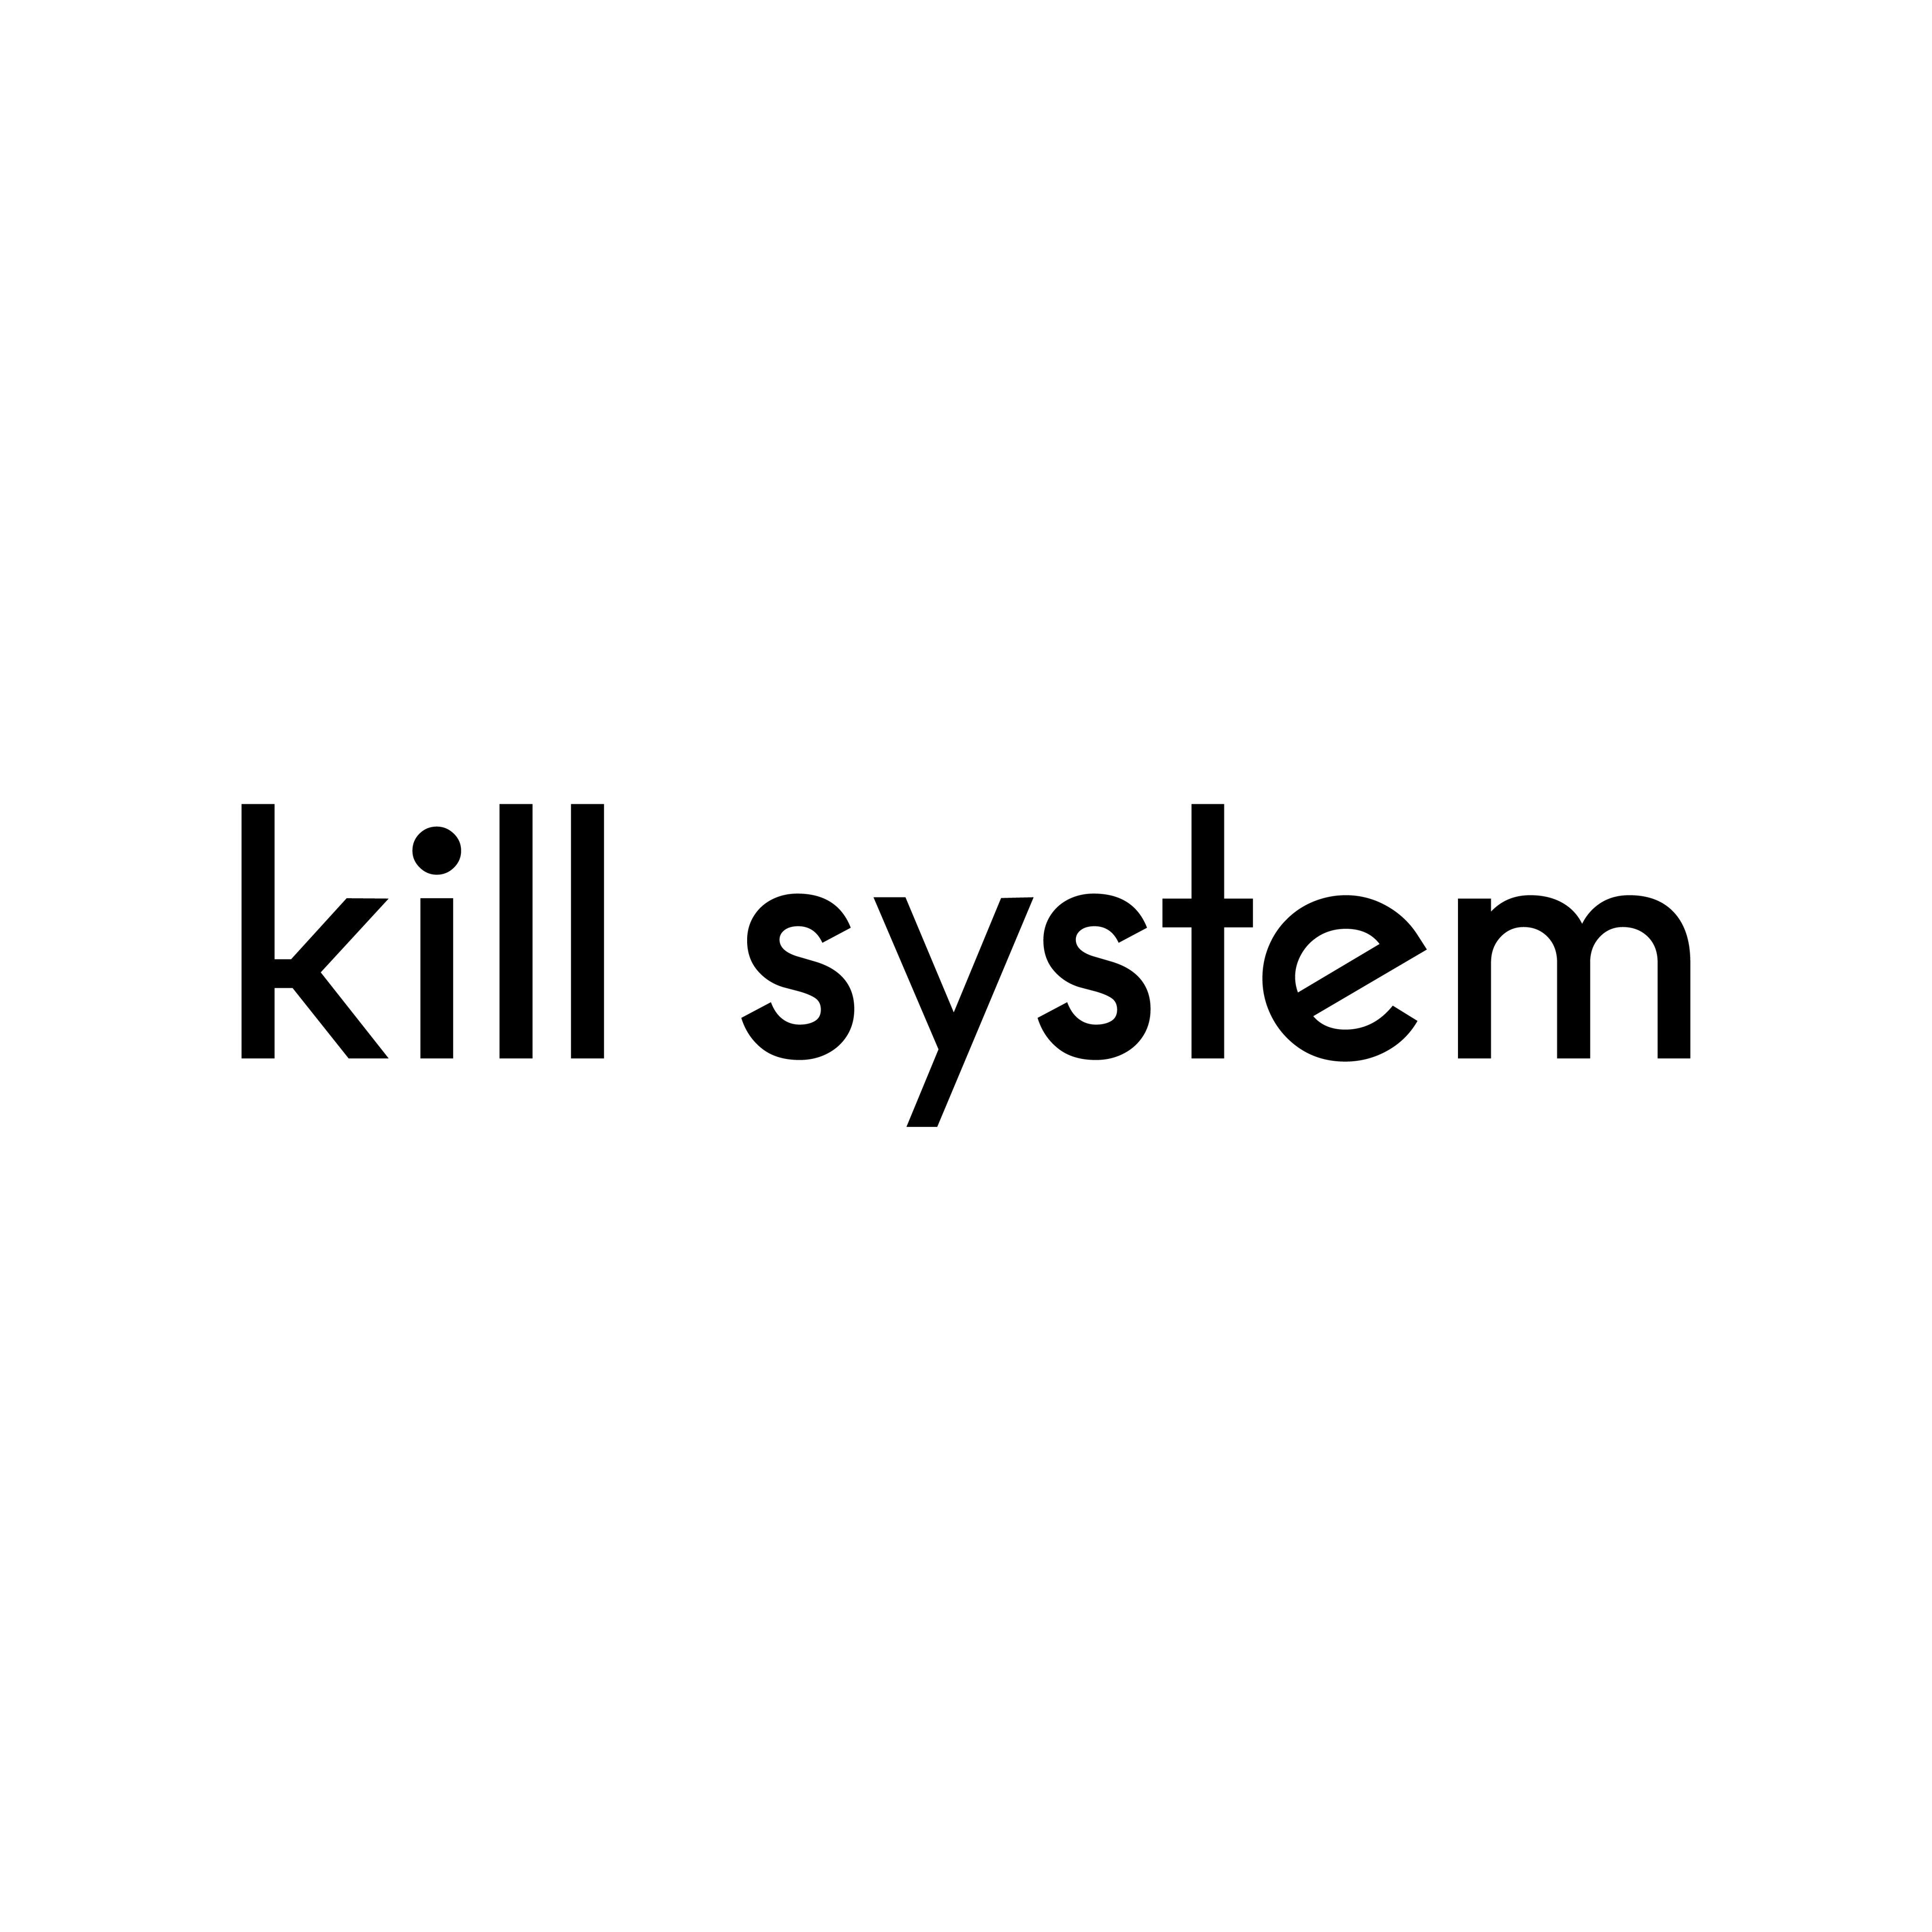 KILL SYSTEM